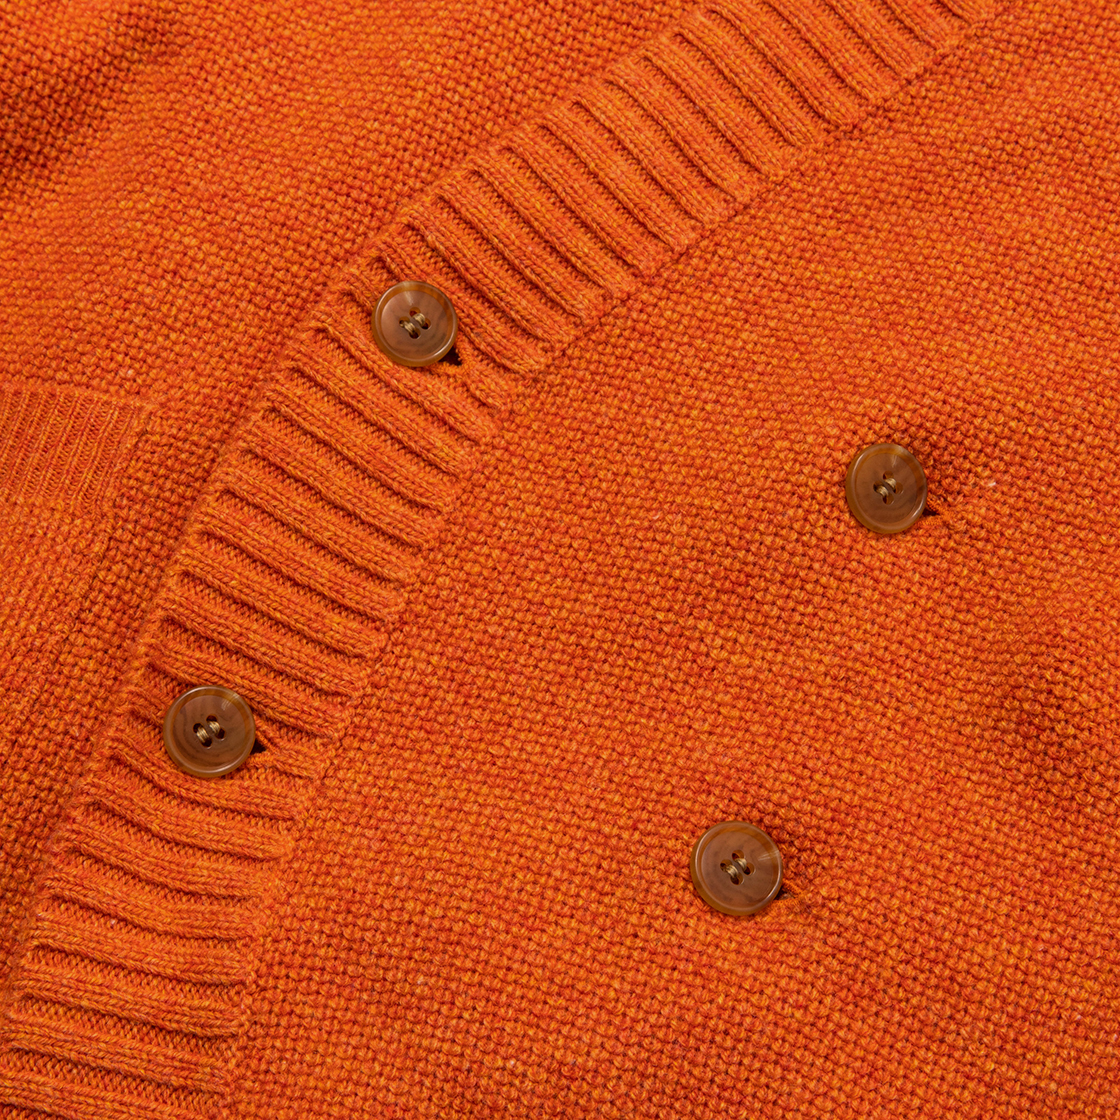 Double Knit Cardigan / Orange